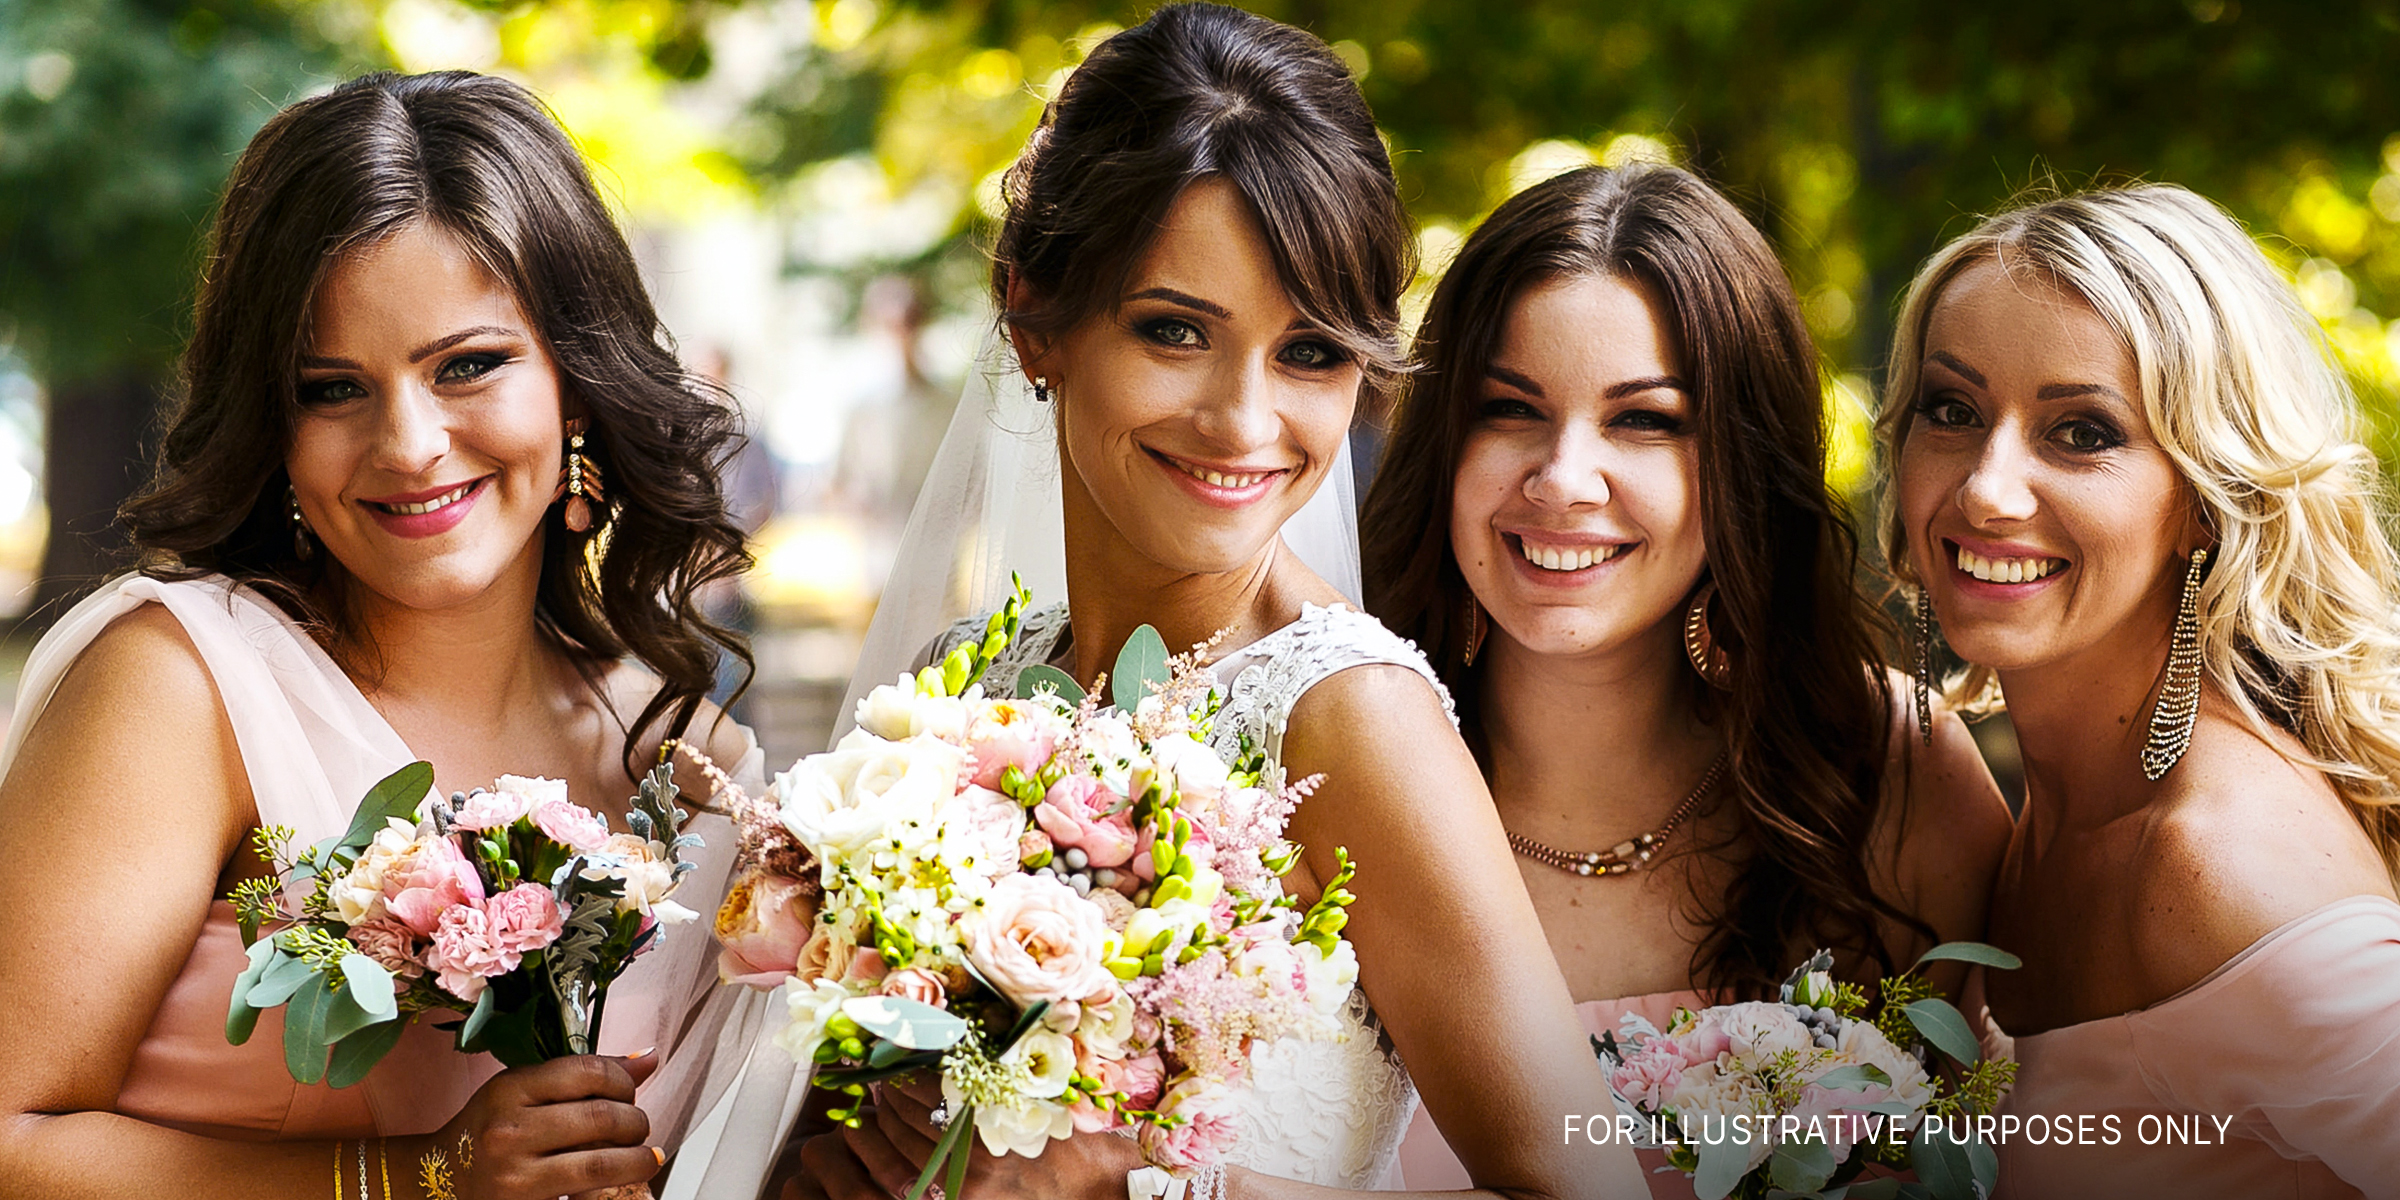 Eine glückliche Hochzeitsgesellschaft | Quelle: Shutterstock